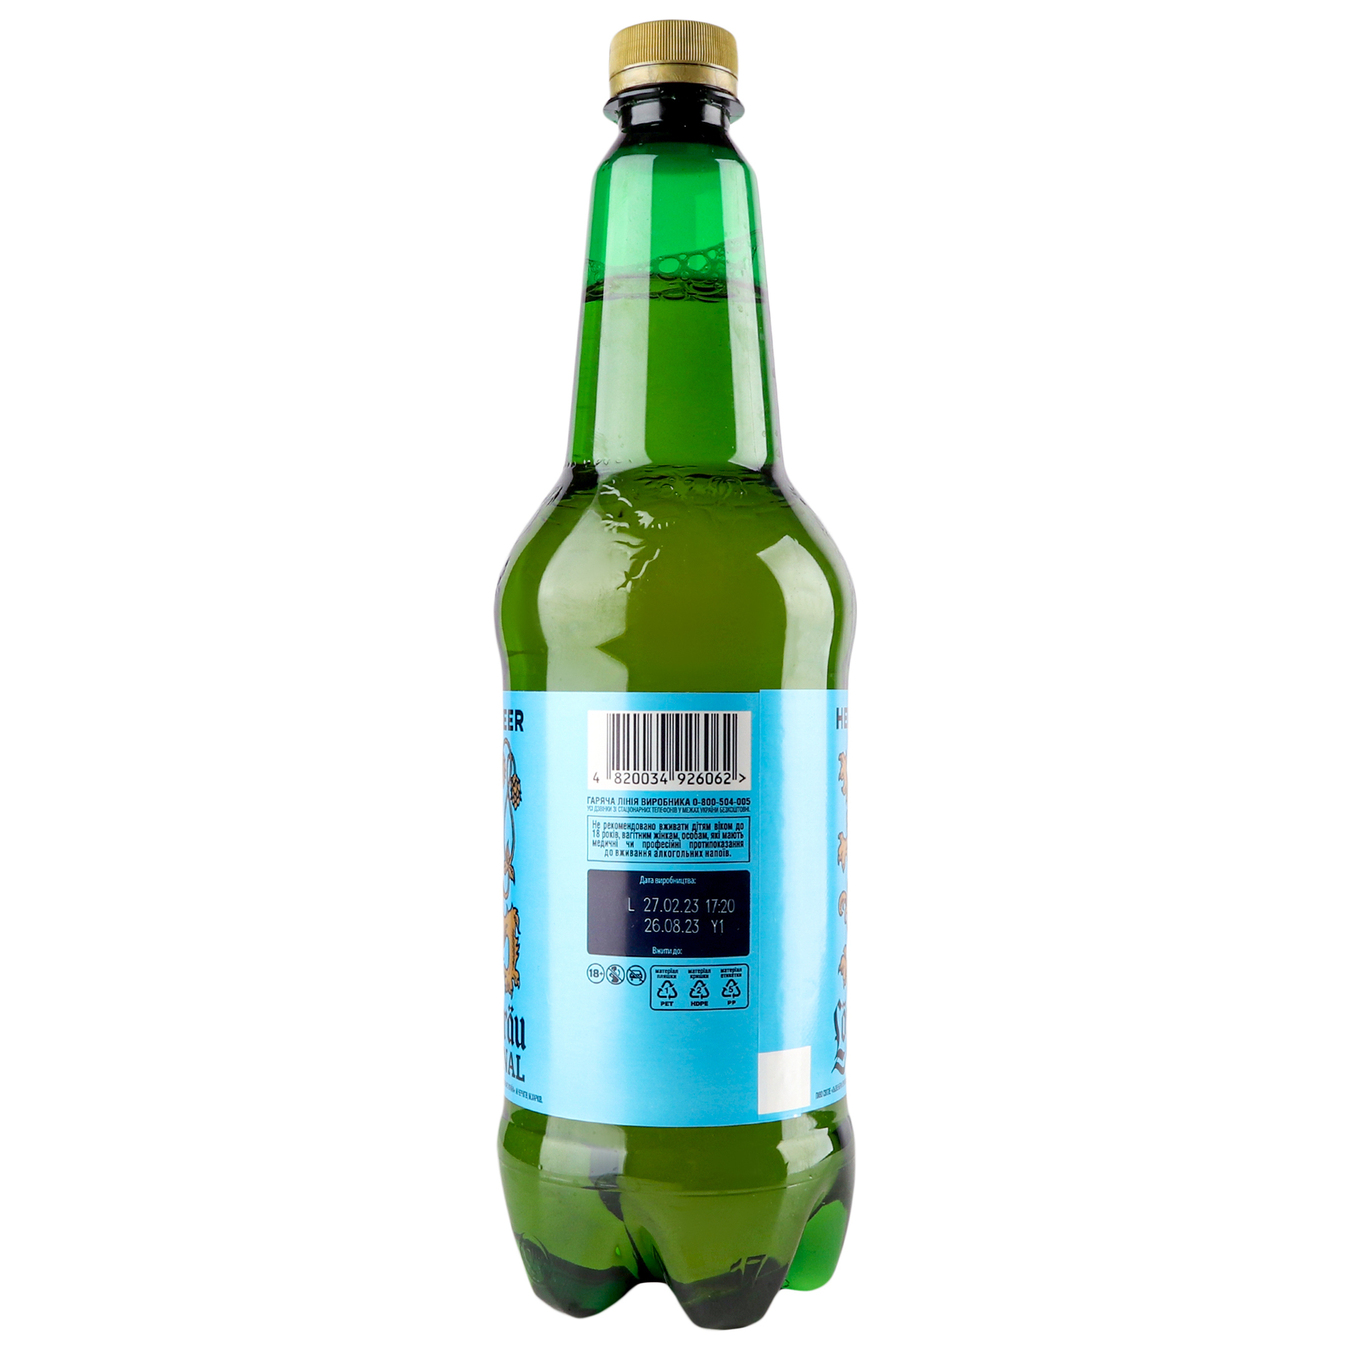 Пиво Lowenbrau Original пастеризованное светлое 5,1% 0,9л 4